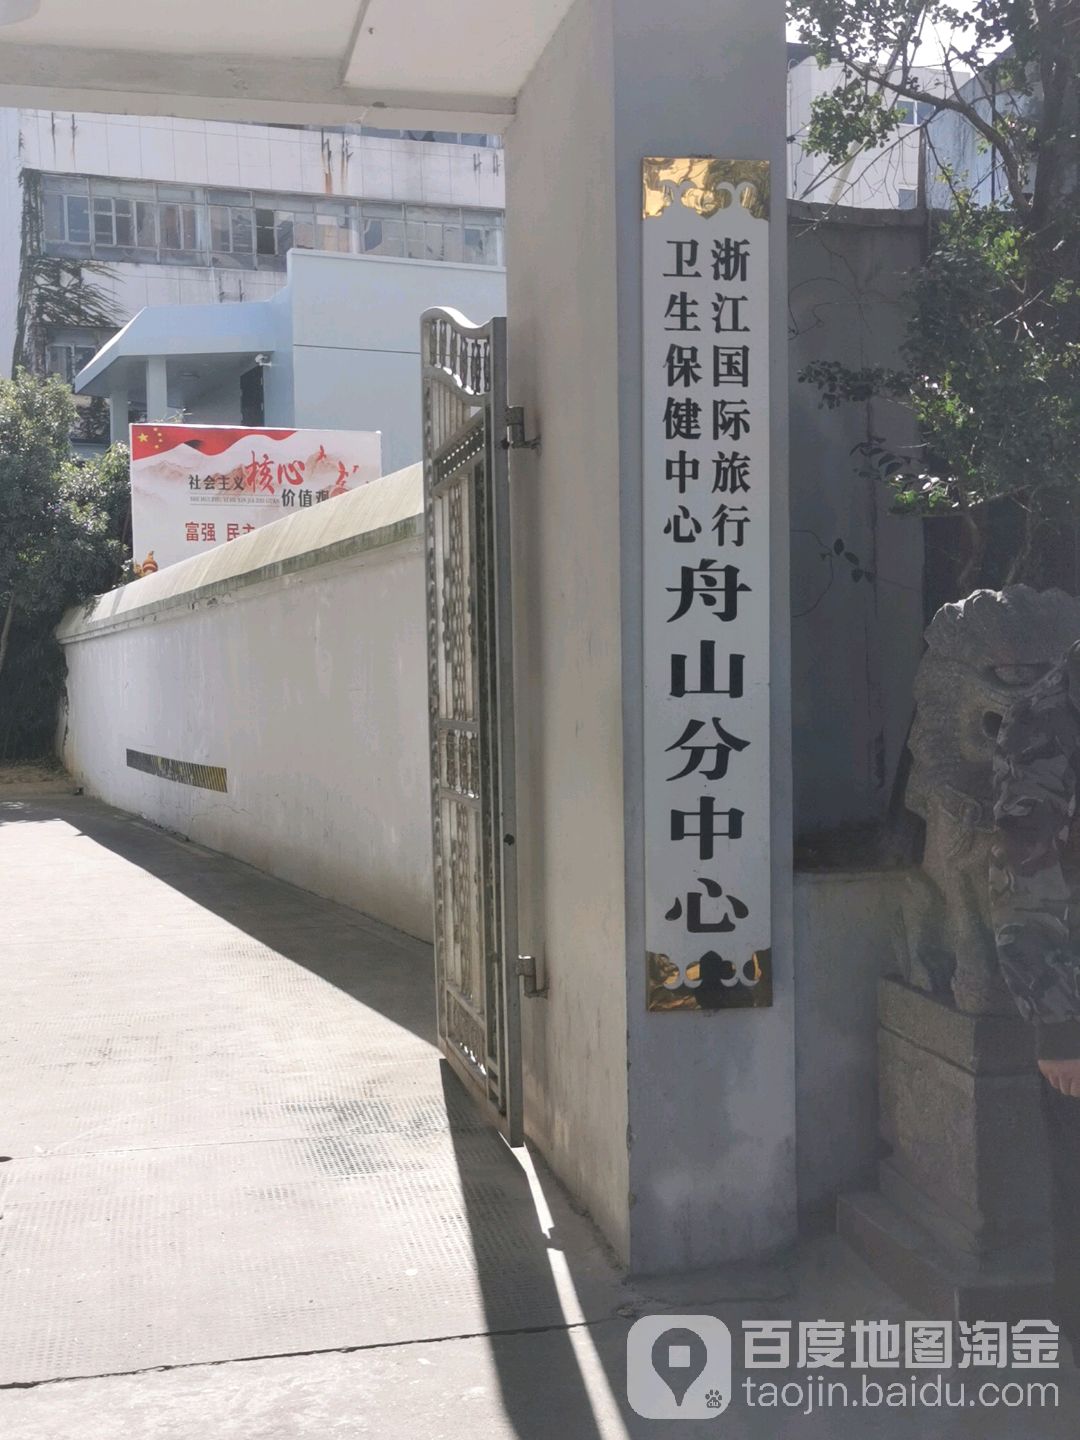 浙江国际旅行卫生保健中心(舟山分中心)